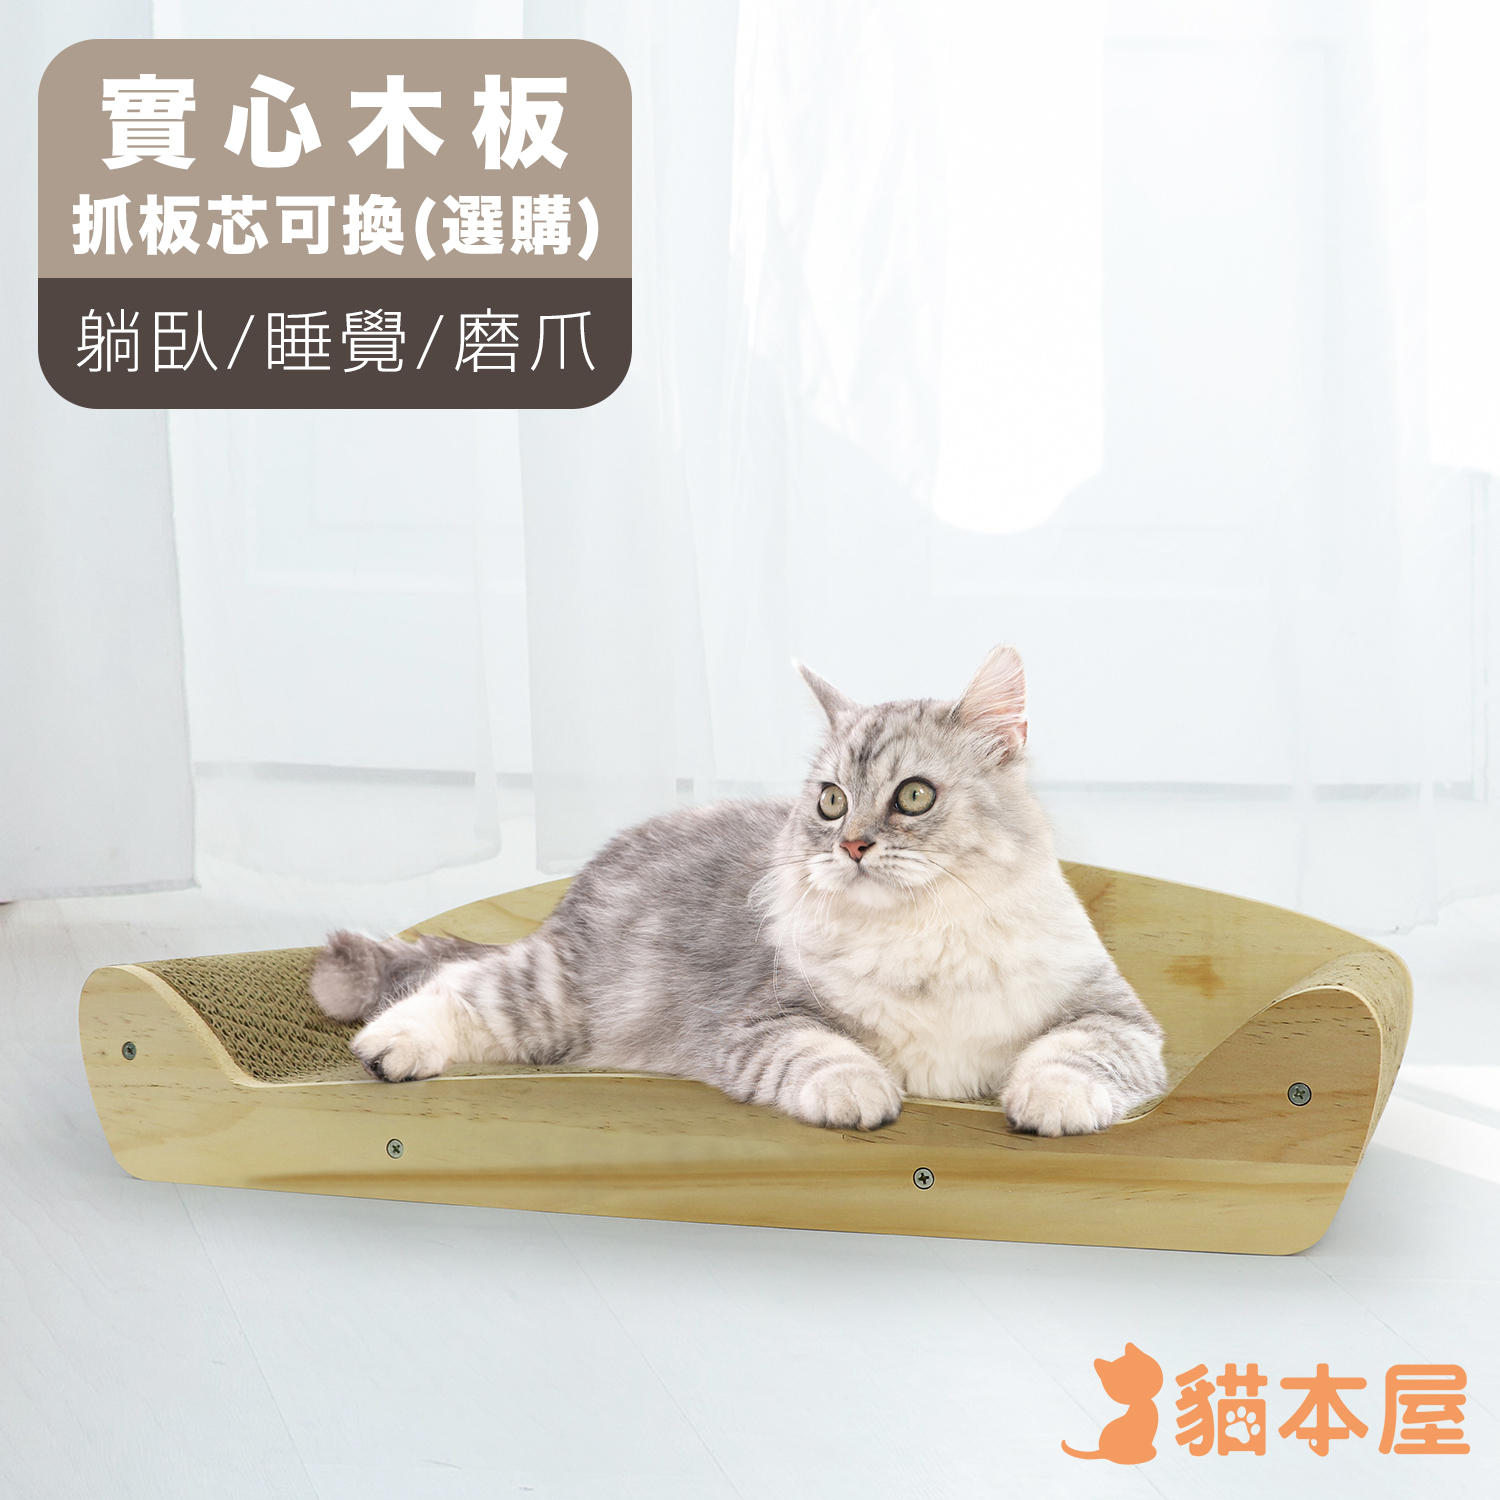 貓本屋 原木系列 沙發椅造型貓抓板(可換芯)